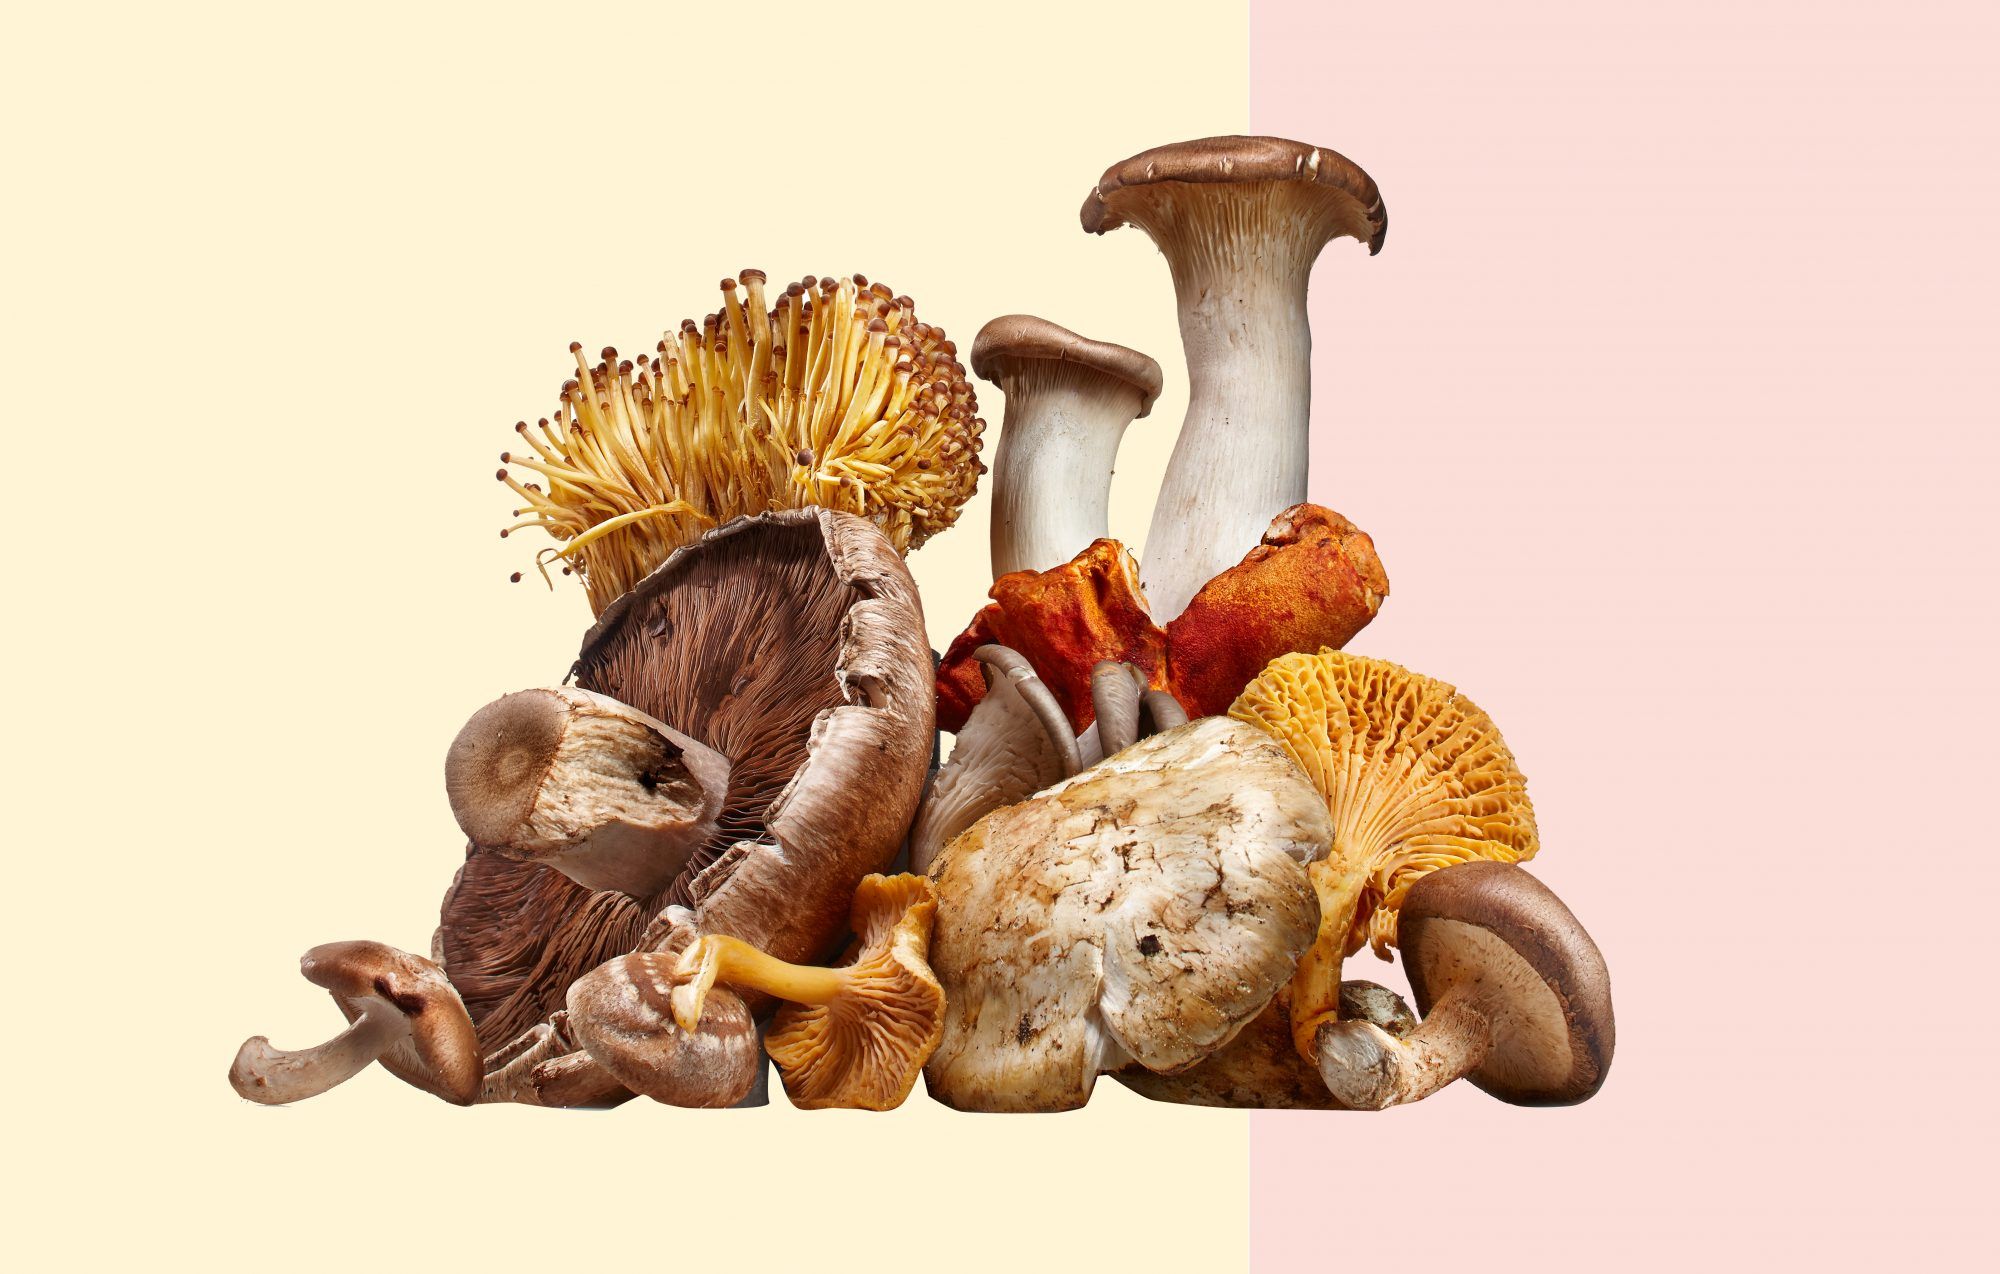 Igal tervislikul põhjusel süüa rohkem seeni